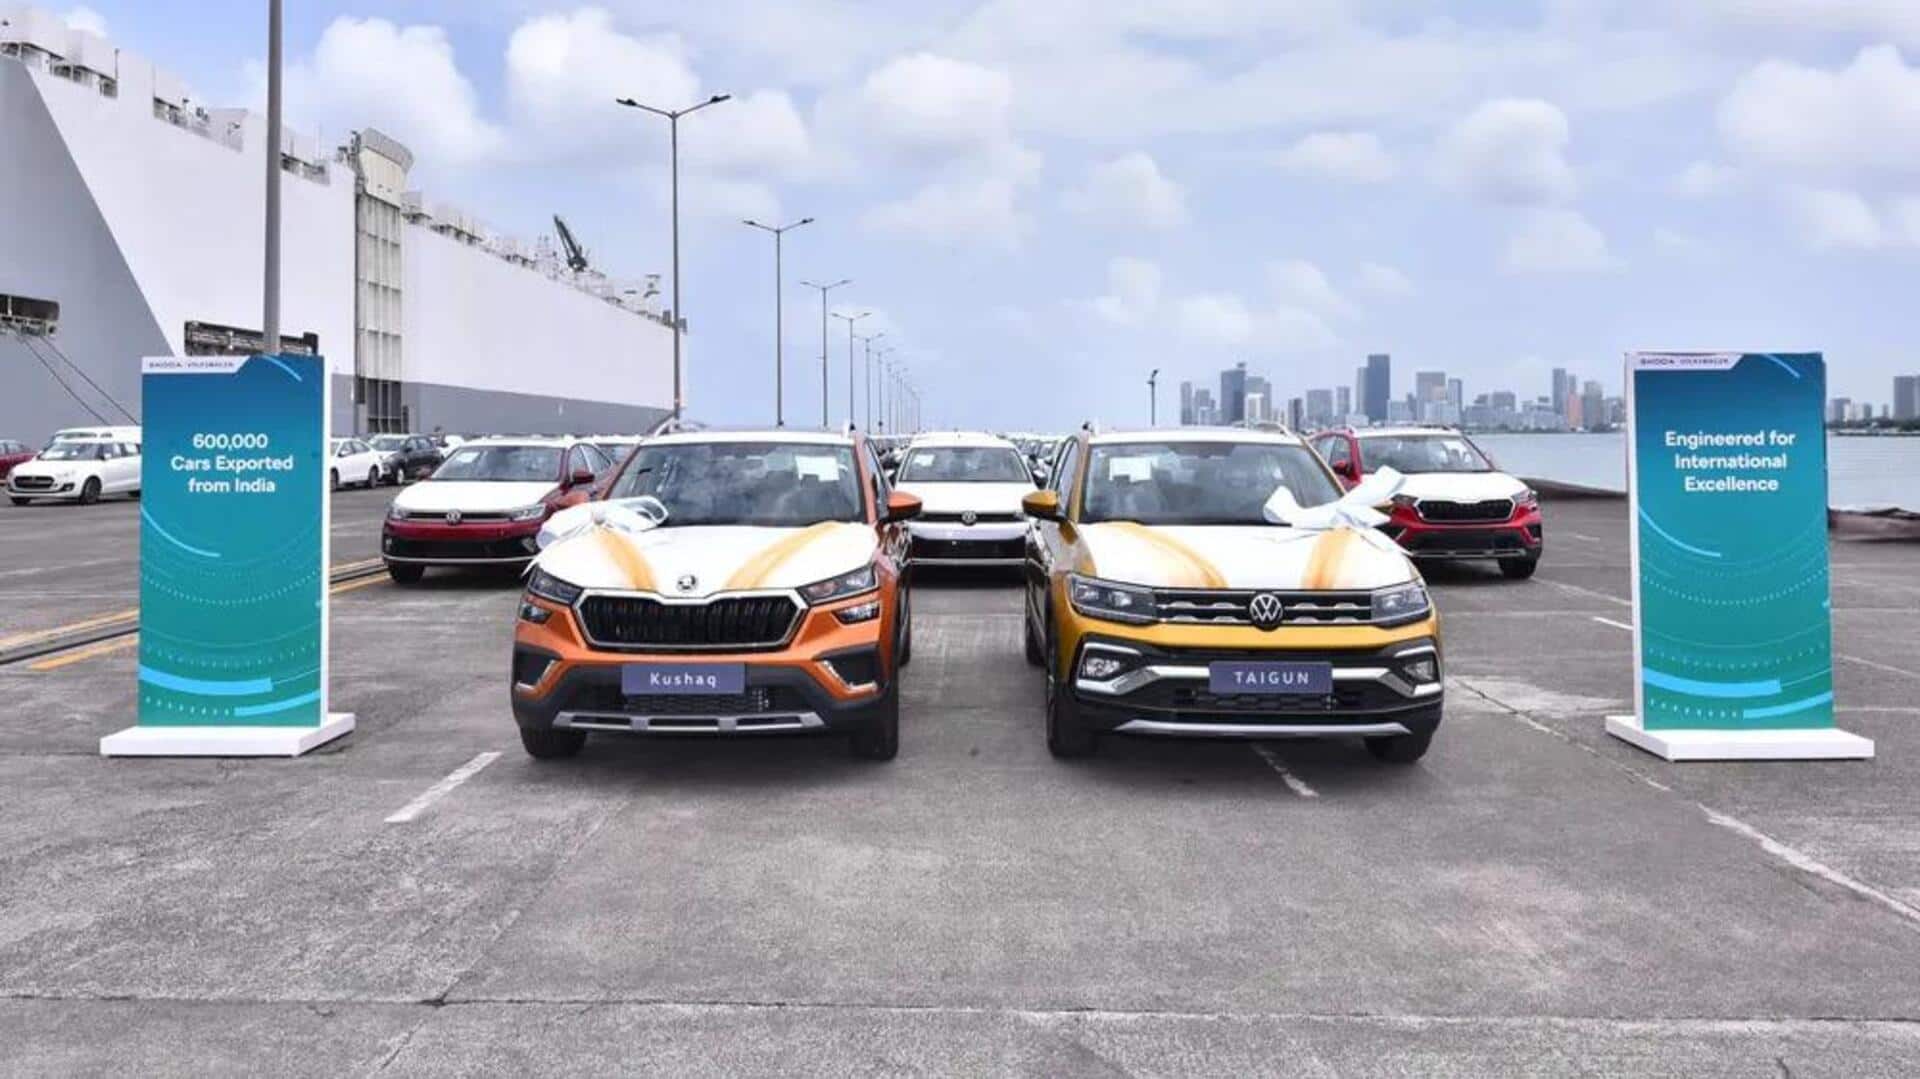 फॉक्सवैगन ग्रुप ने भारत निर्मित कारों के निर्यात में 6 लाख यूनिट का आंकड़ा किया पार